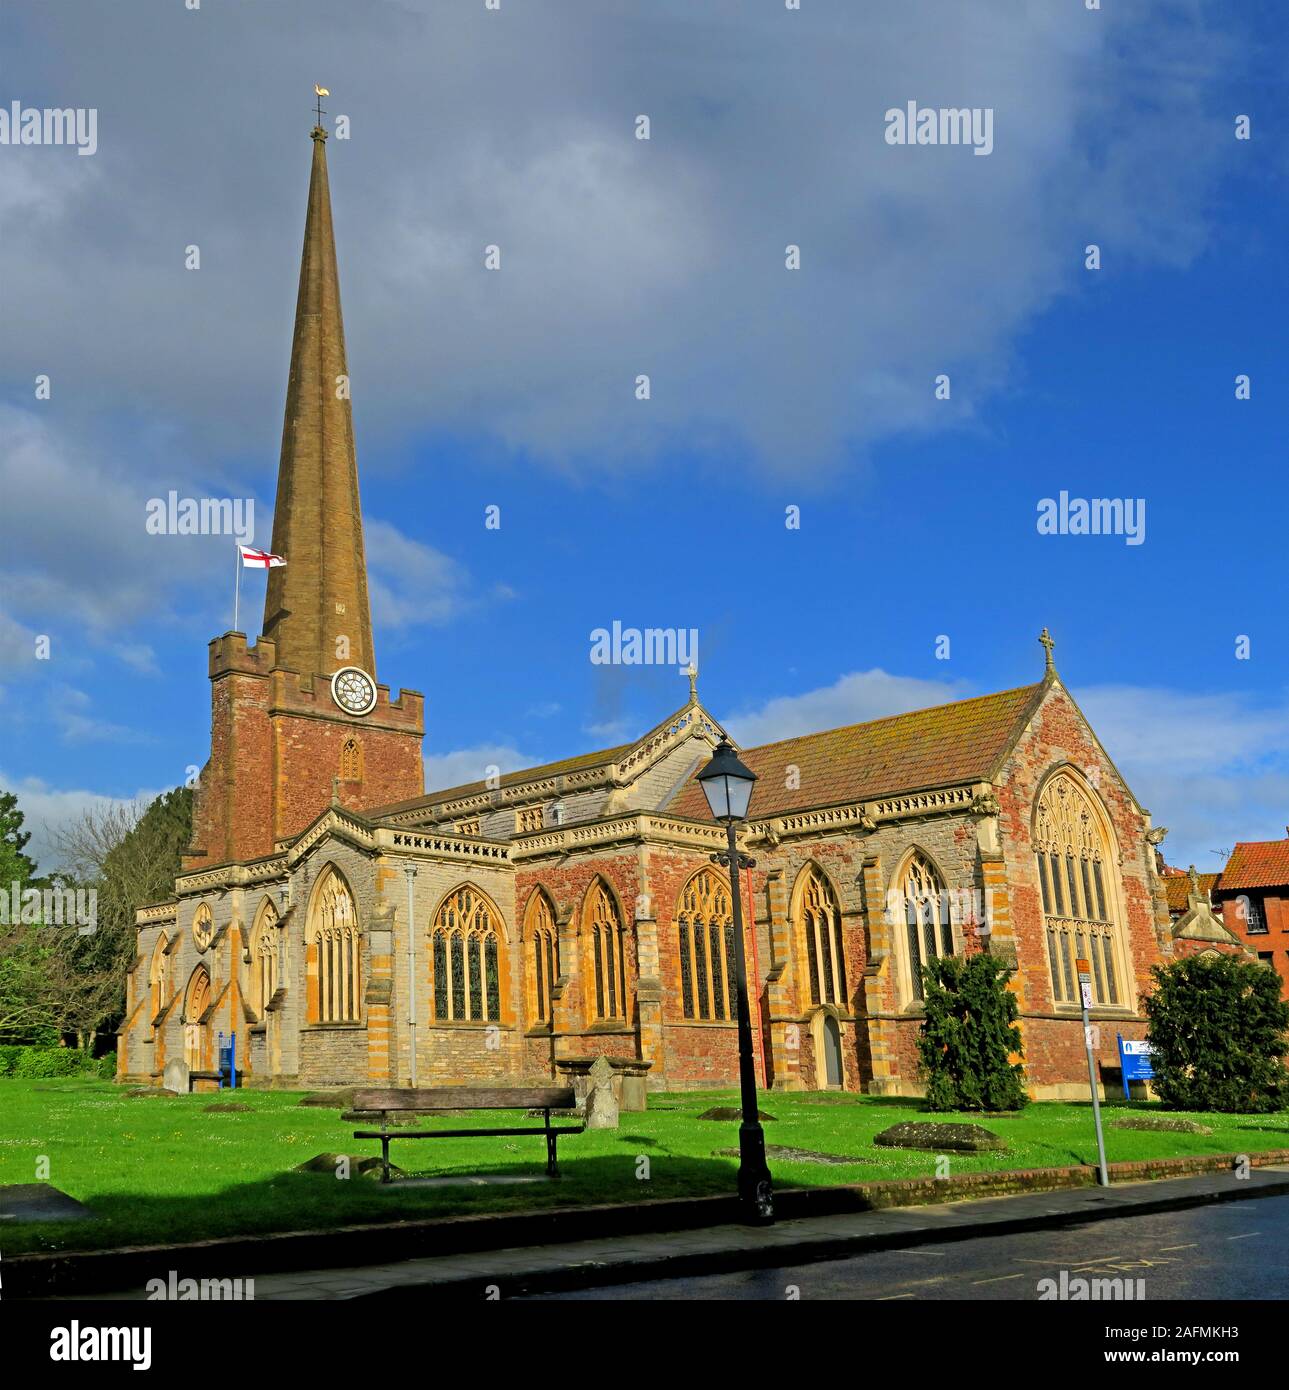 Bâtiment classé dans l'église historique de St Marys, Bridgwater, Somerset, Angleterre, Royaume-Uni Banque D'Images